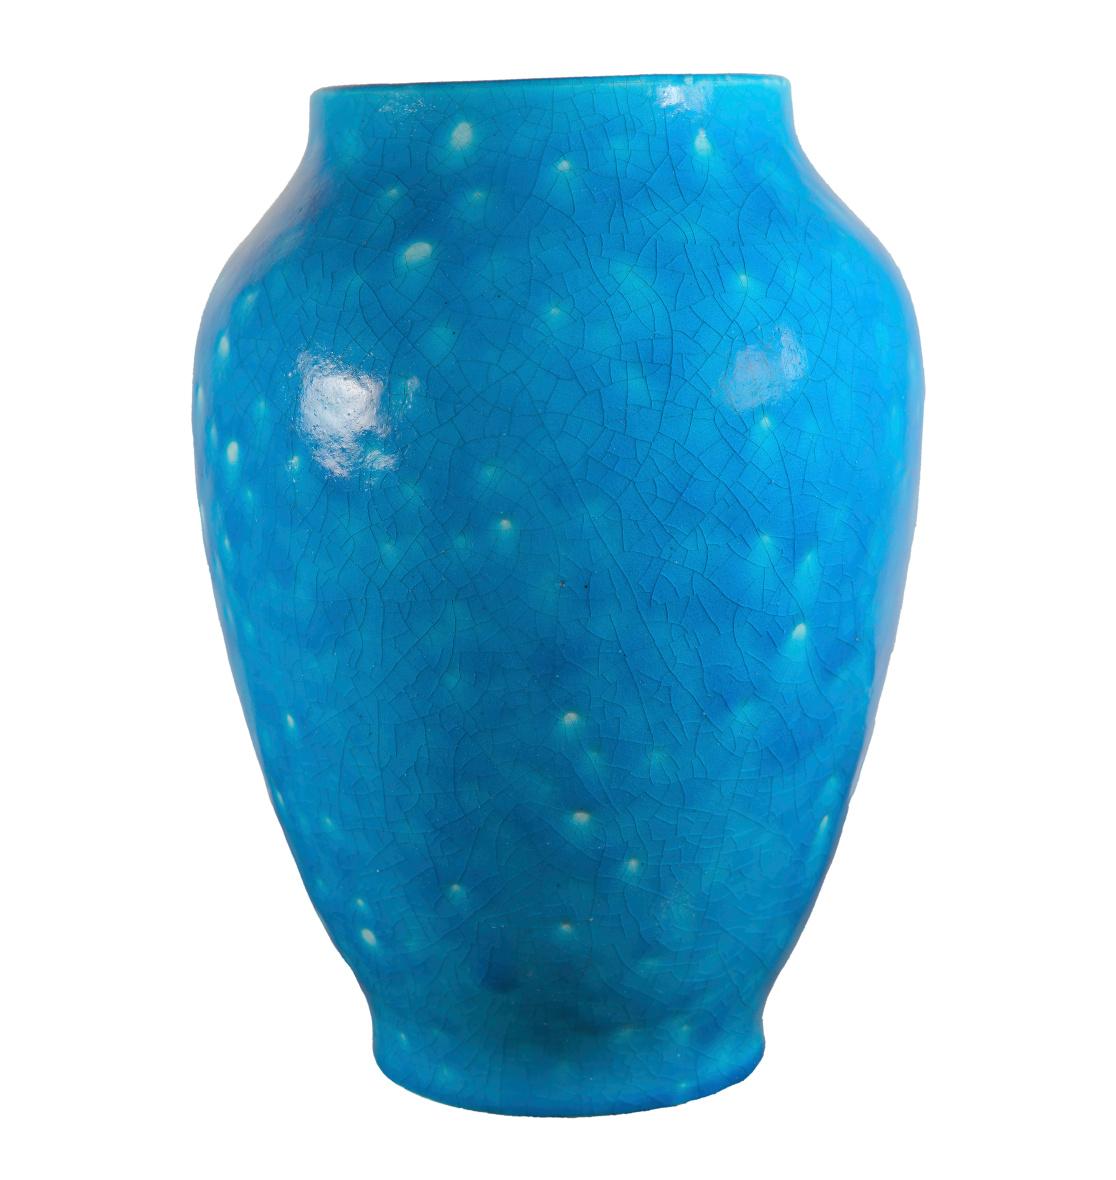 Raoul Lachenal Large Crackle Glaze Egyptian Blue French Baluster Ceramic Vase